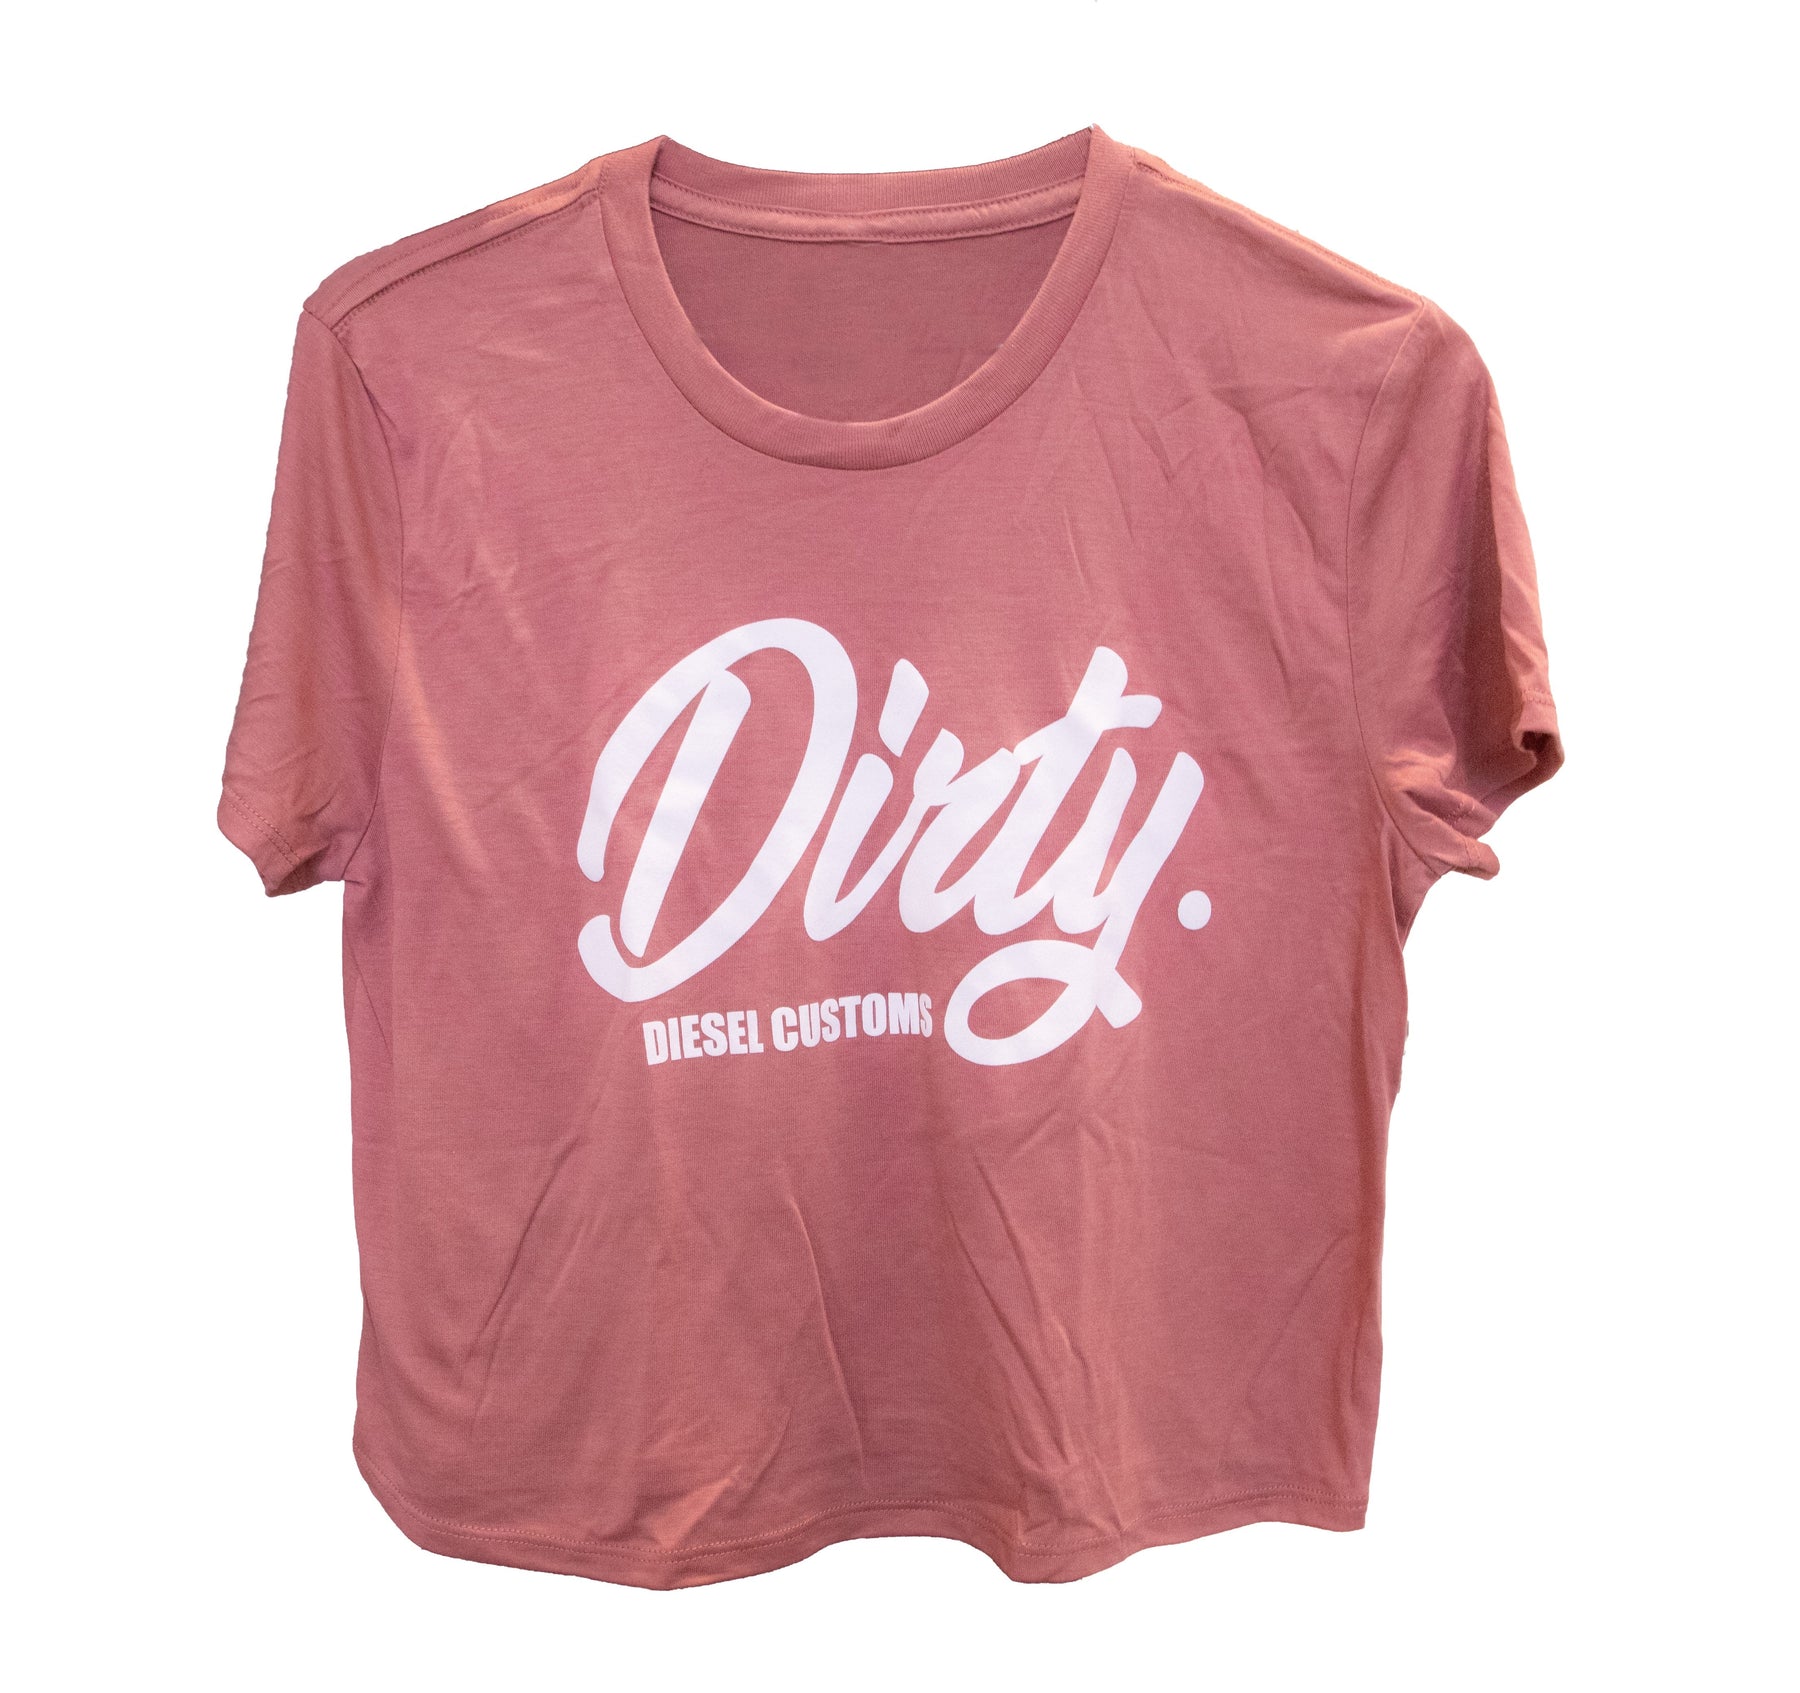 Women's Dirty Diesel Crop Top-T-Shirt-Dirty Diesel Customs-dirty-crop-Pink-Sleeved-Small-Dirty Diesel Customs